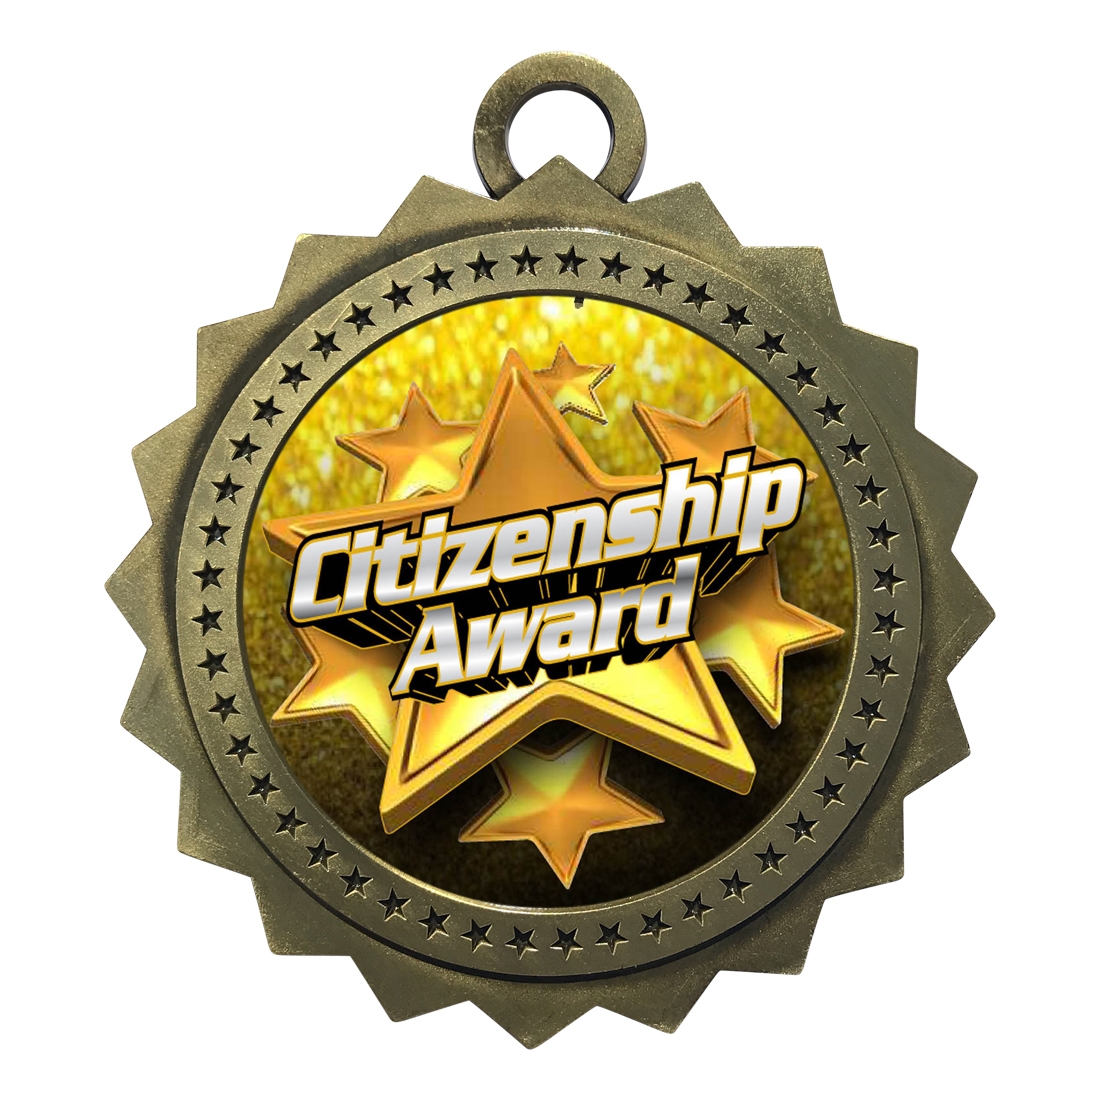 3" Citizenship Award Medal